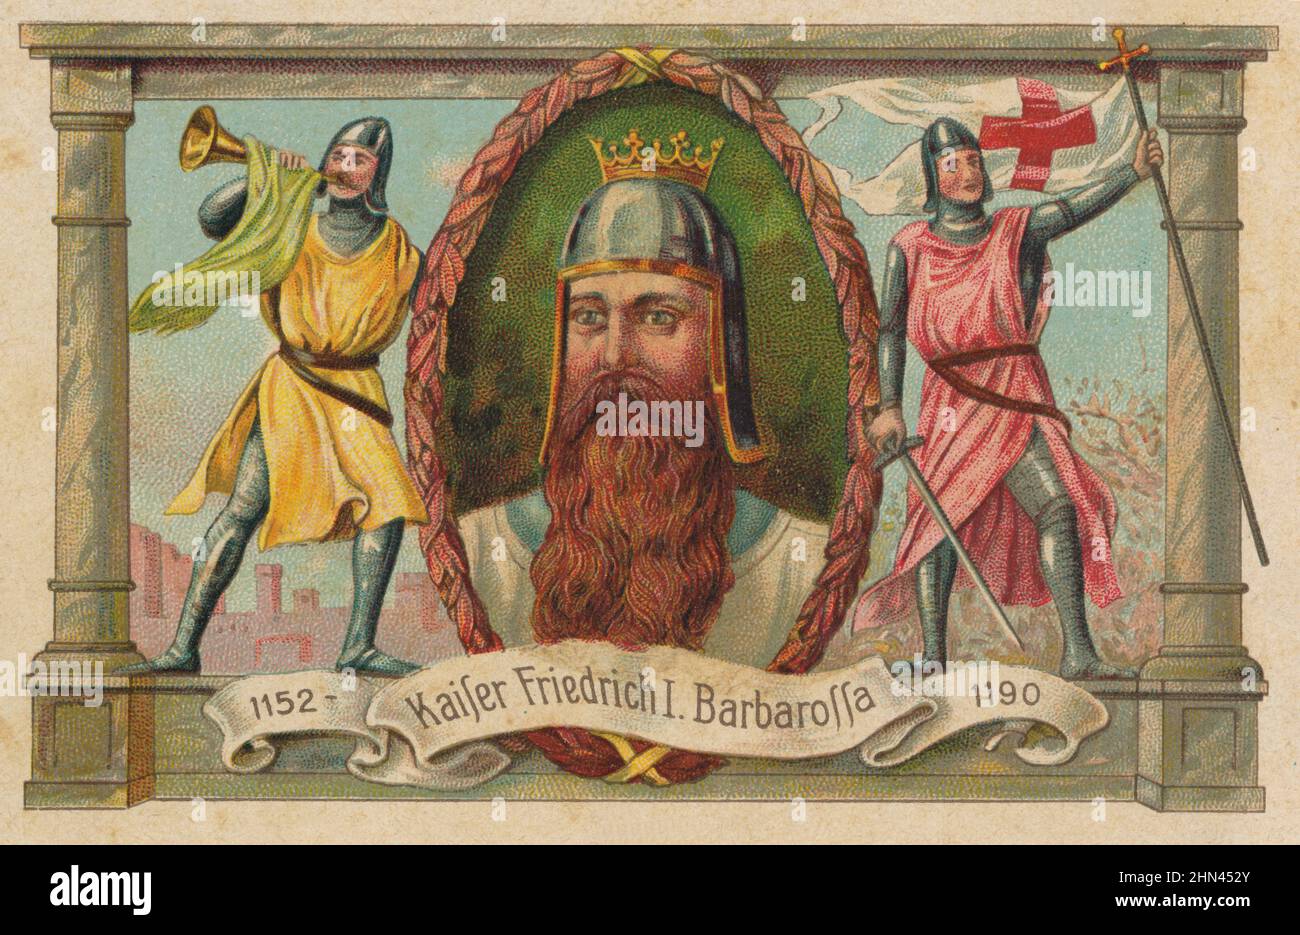 Federico I de Hohenstaufen (1122-1190), llamado Barbarroja por el color de su barba, emperador del Sacro Imperio Romano Germánico. Stock Photo